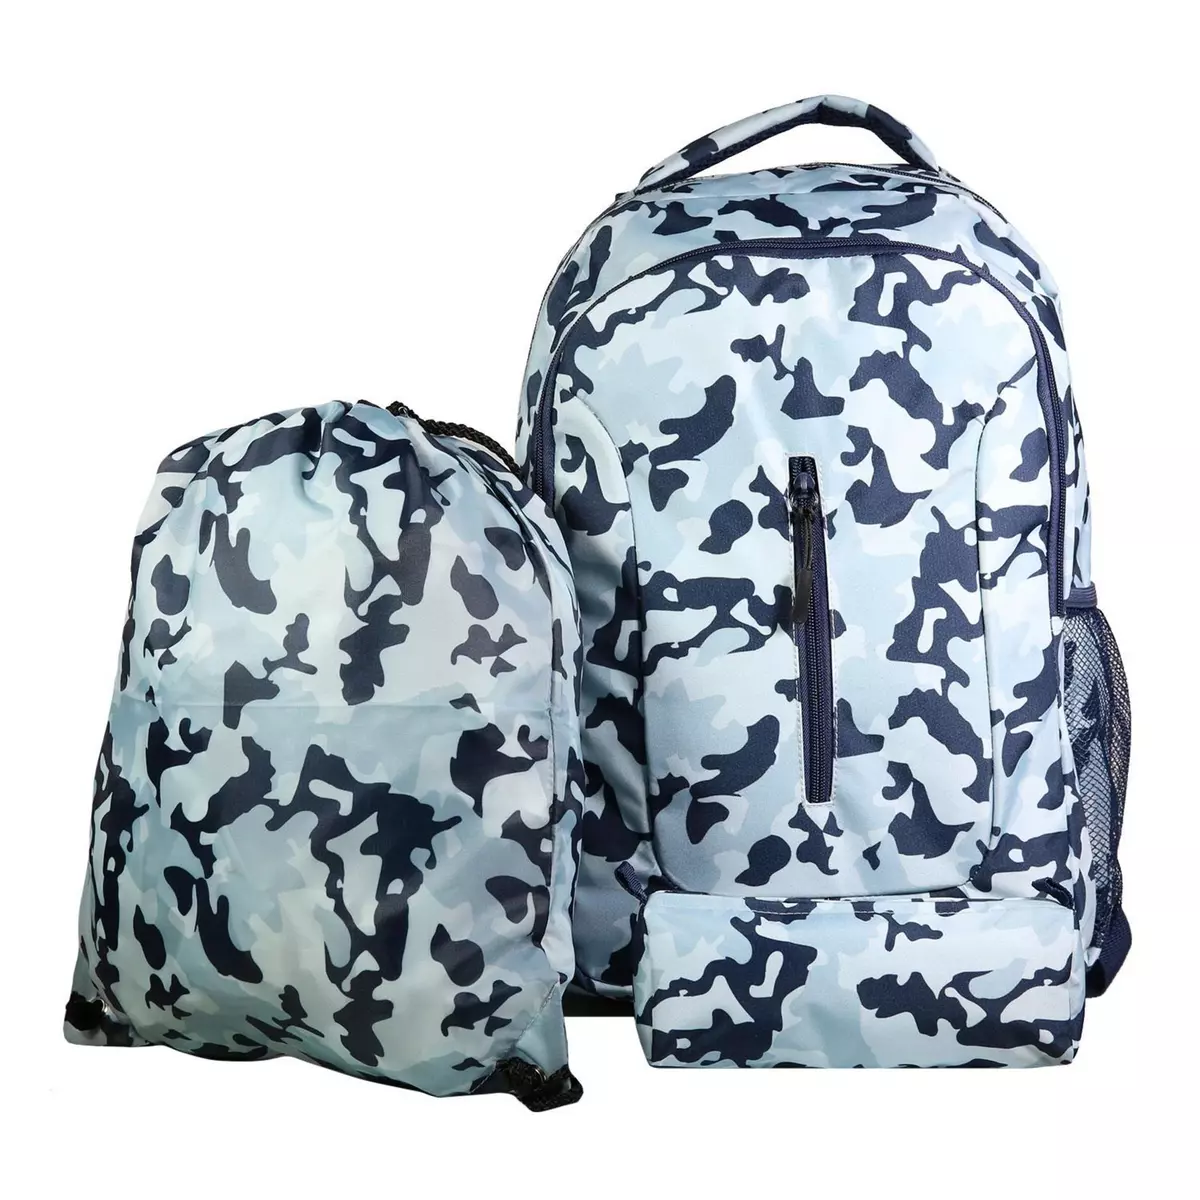 Bagtrotter BAGTROTTER Set de sac à dos, sac gym et trousse Bagtrotter Bleu Camouflage